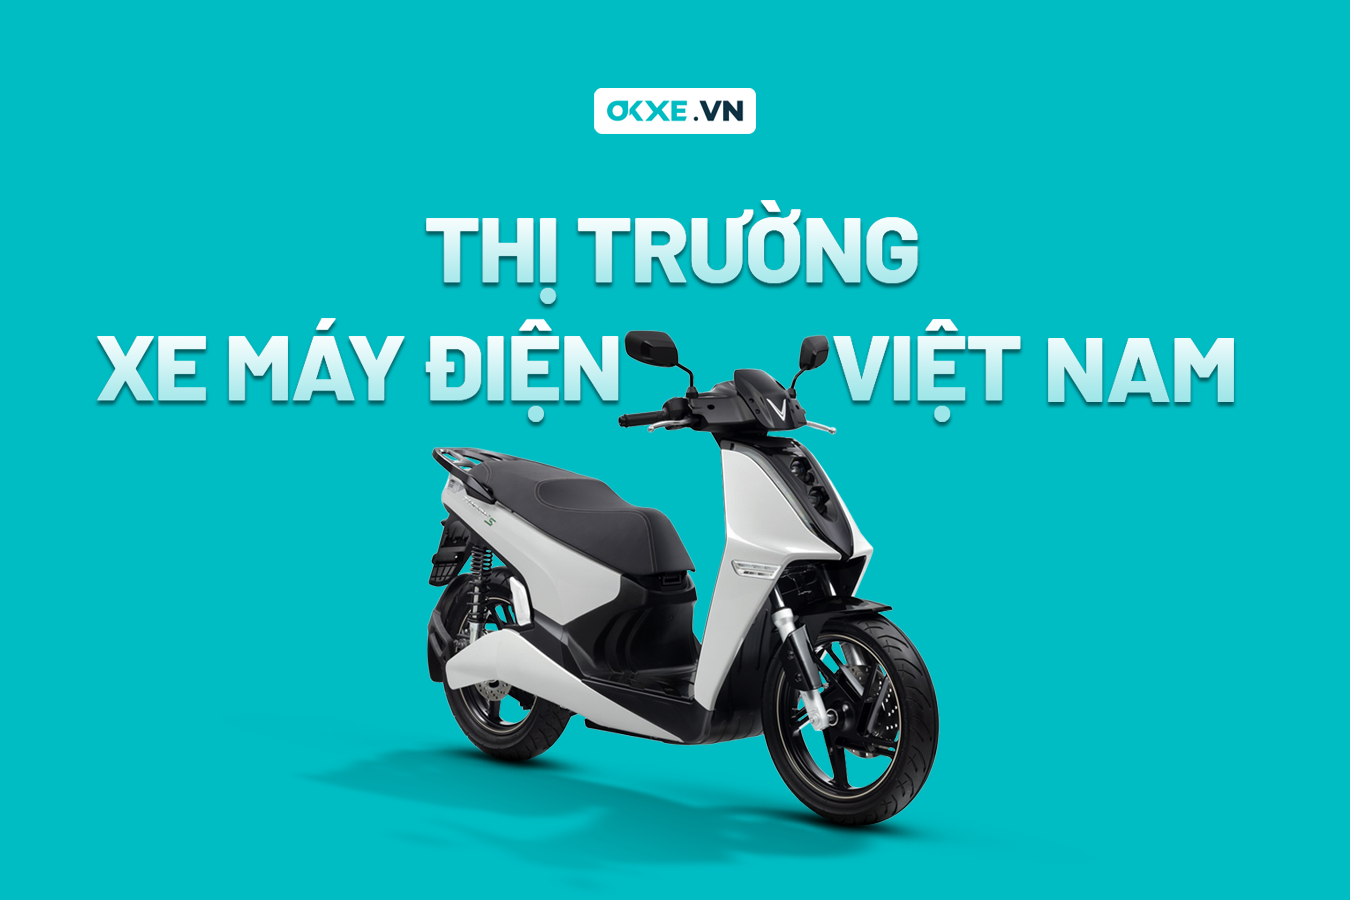 Thăng trầm thị trường xe máy điện Việt Nam trong gần 20 năm qua